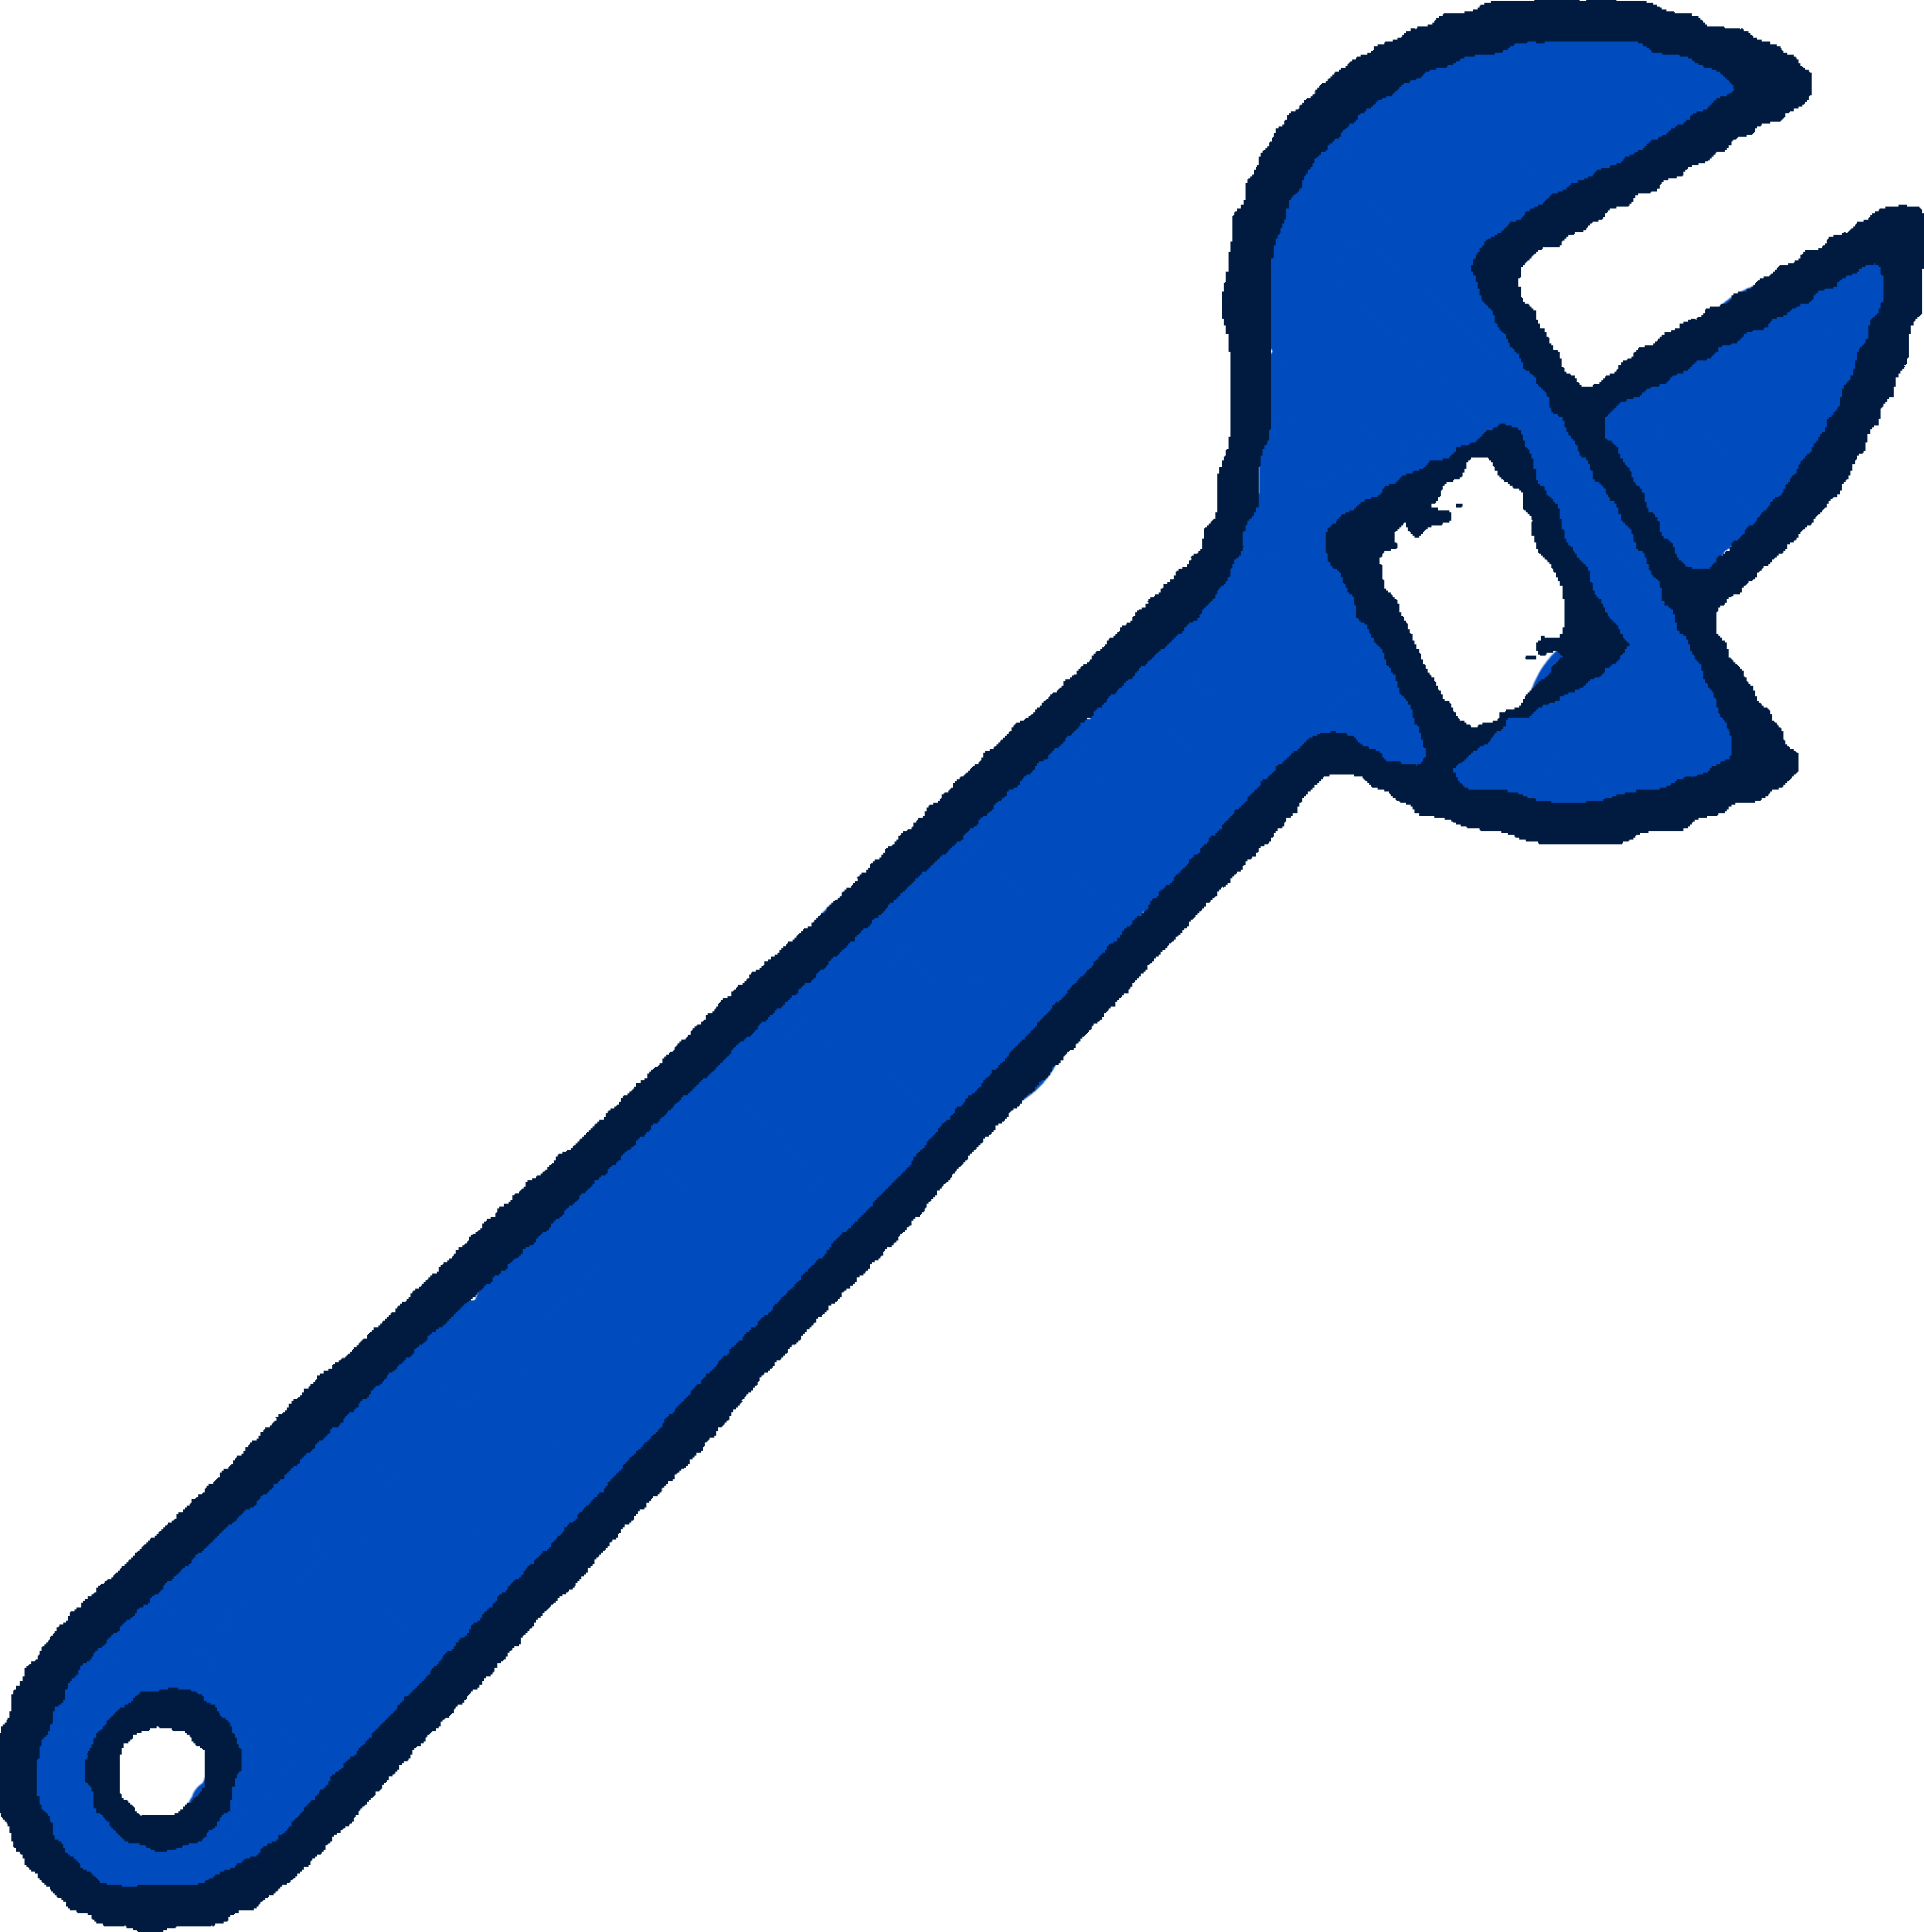 Совсем ключ. Гаечный ключ. Гаечный ключ детский. Ребенок с гаечным ключом. Изображение гаечного ключа для детей.